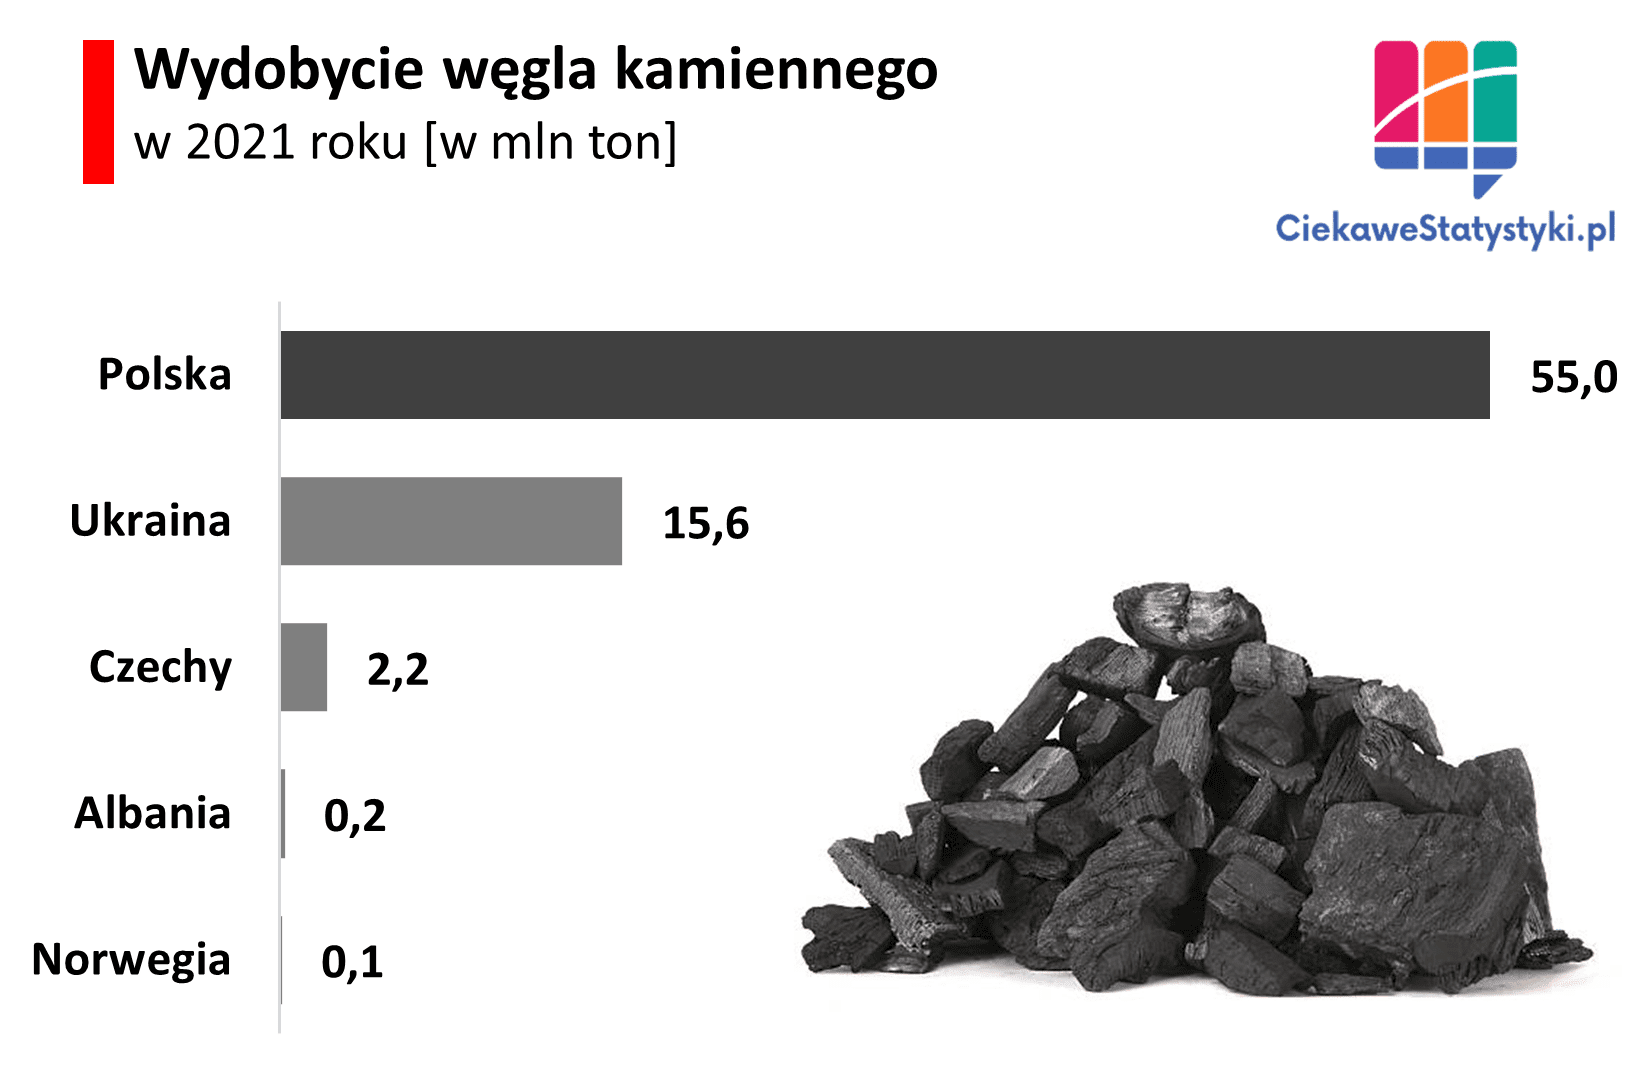 Gdzie w Europie wydobywa się najwięcej węgla kamiennego